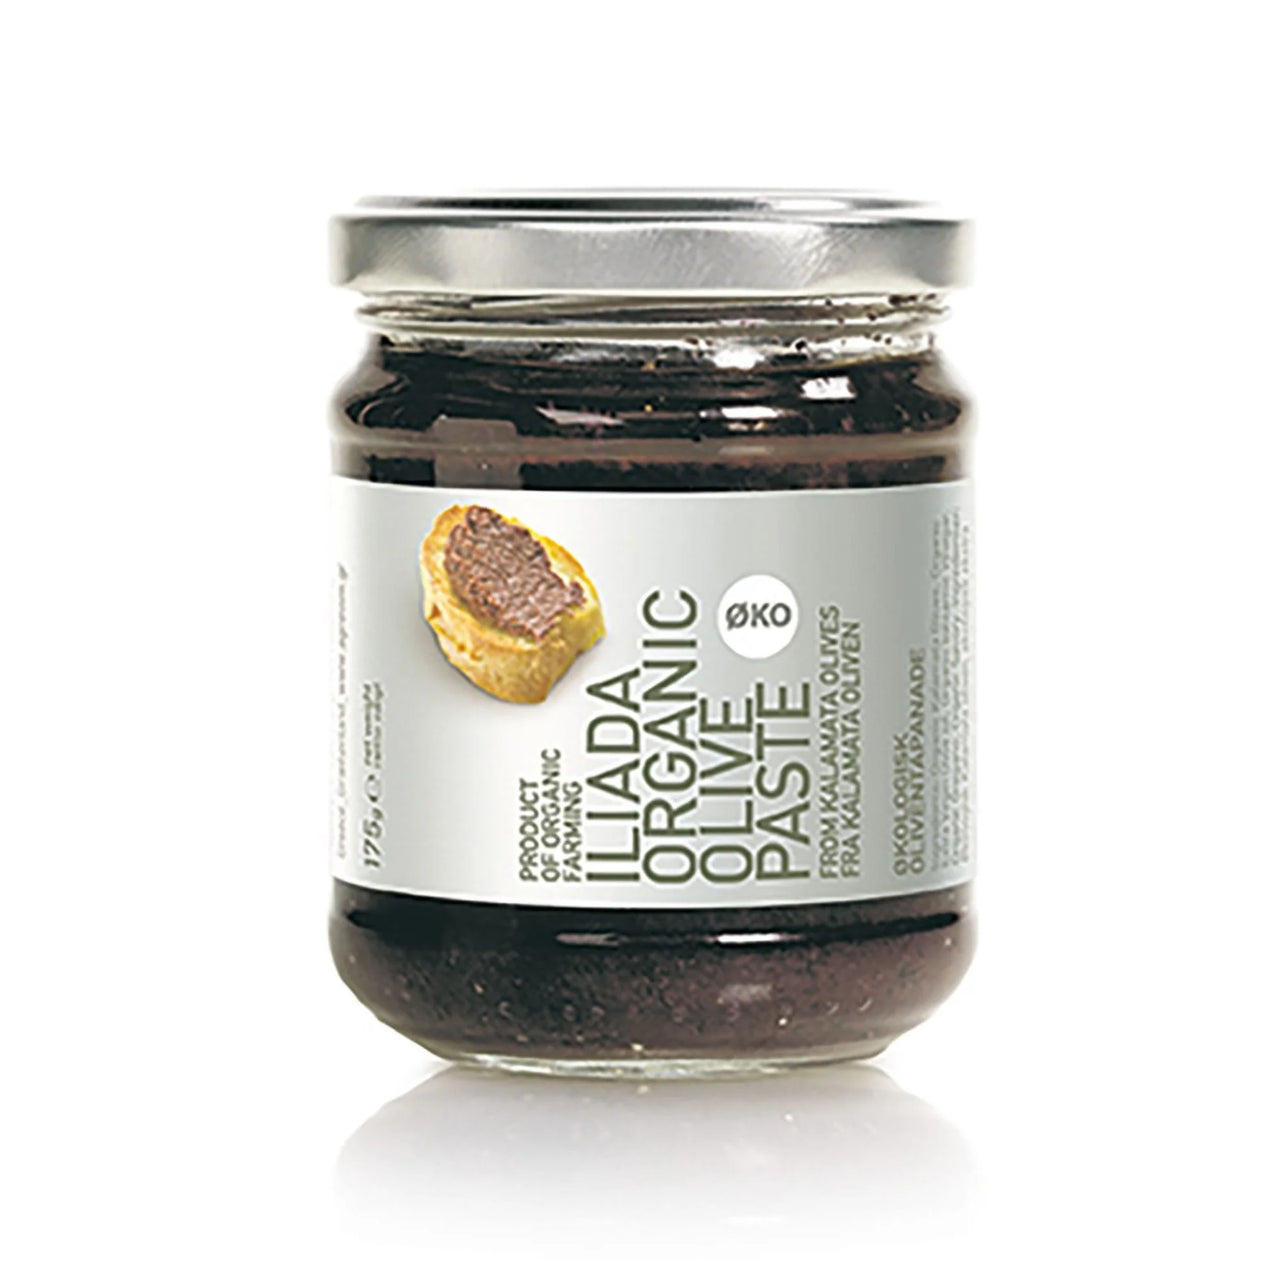 Iliada - Organic Olive Paste Tapenade - [175g]